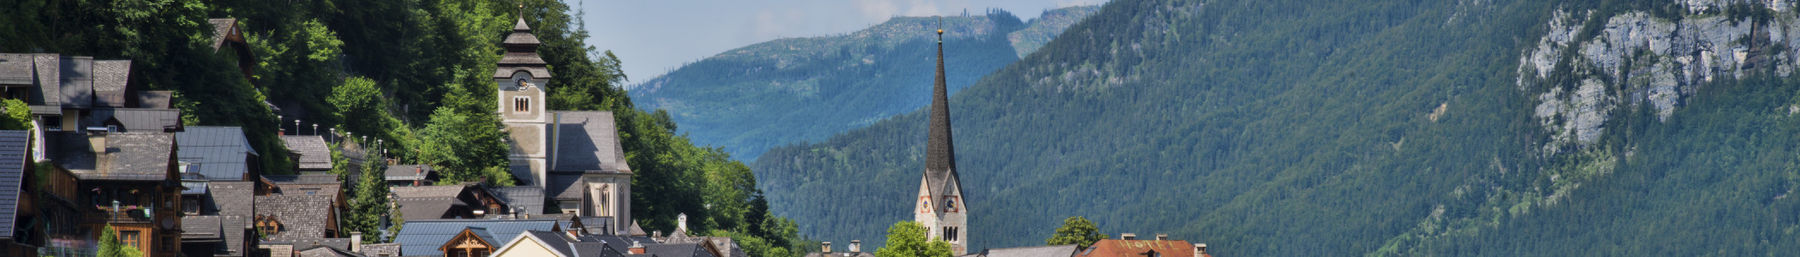 Το χωριό Χάλστατ στην Άνω Αυστρία